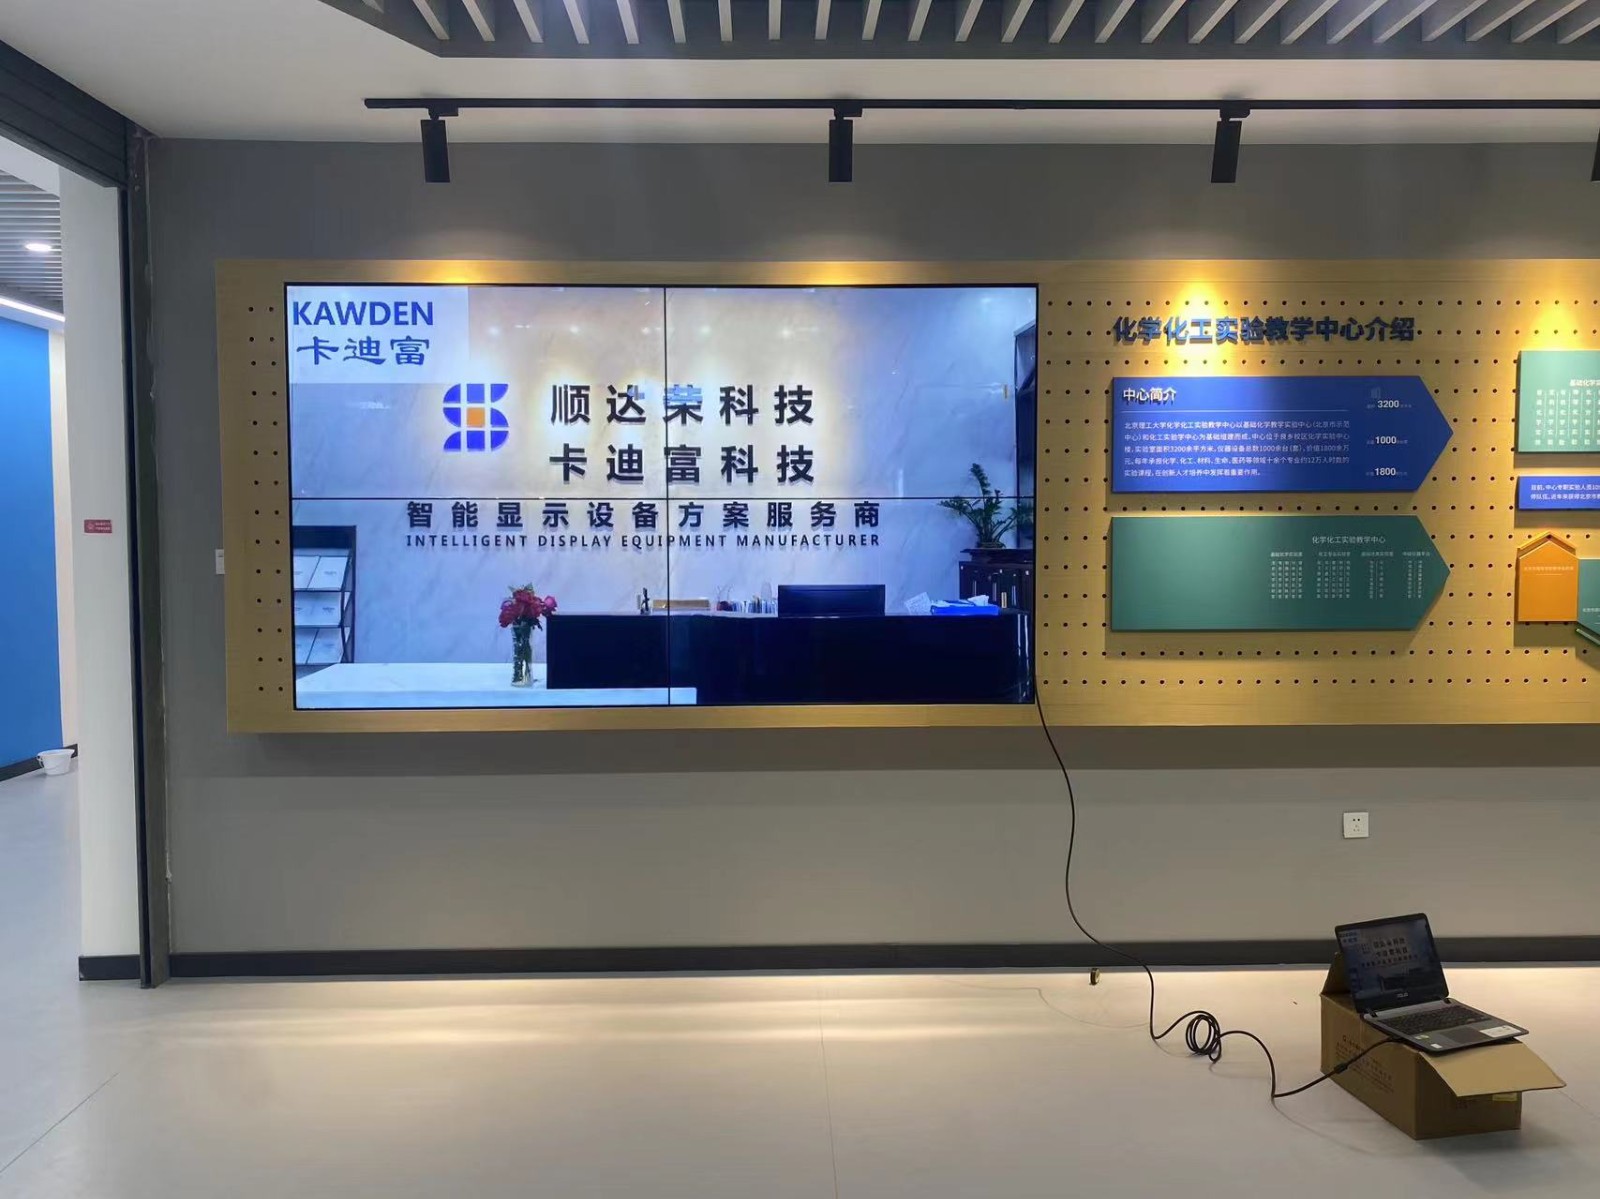 北京市丰台区某印刷公司项目55寸液晶拼接屏